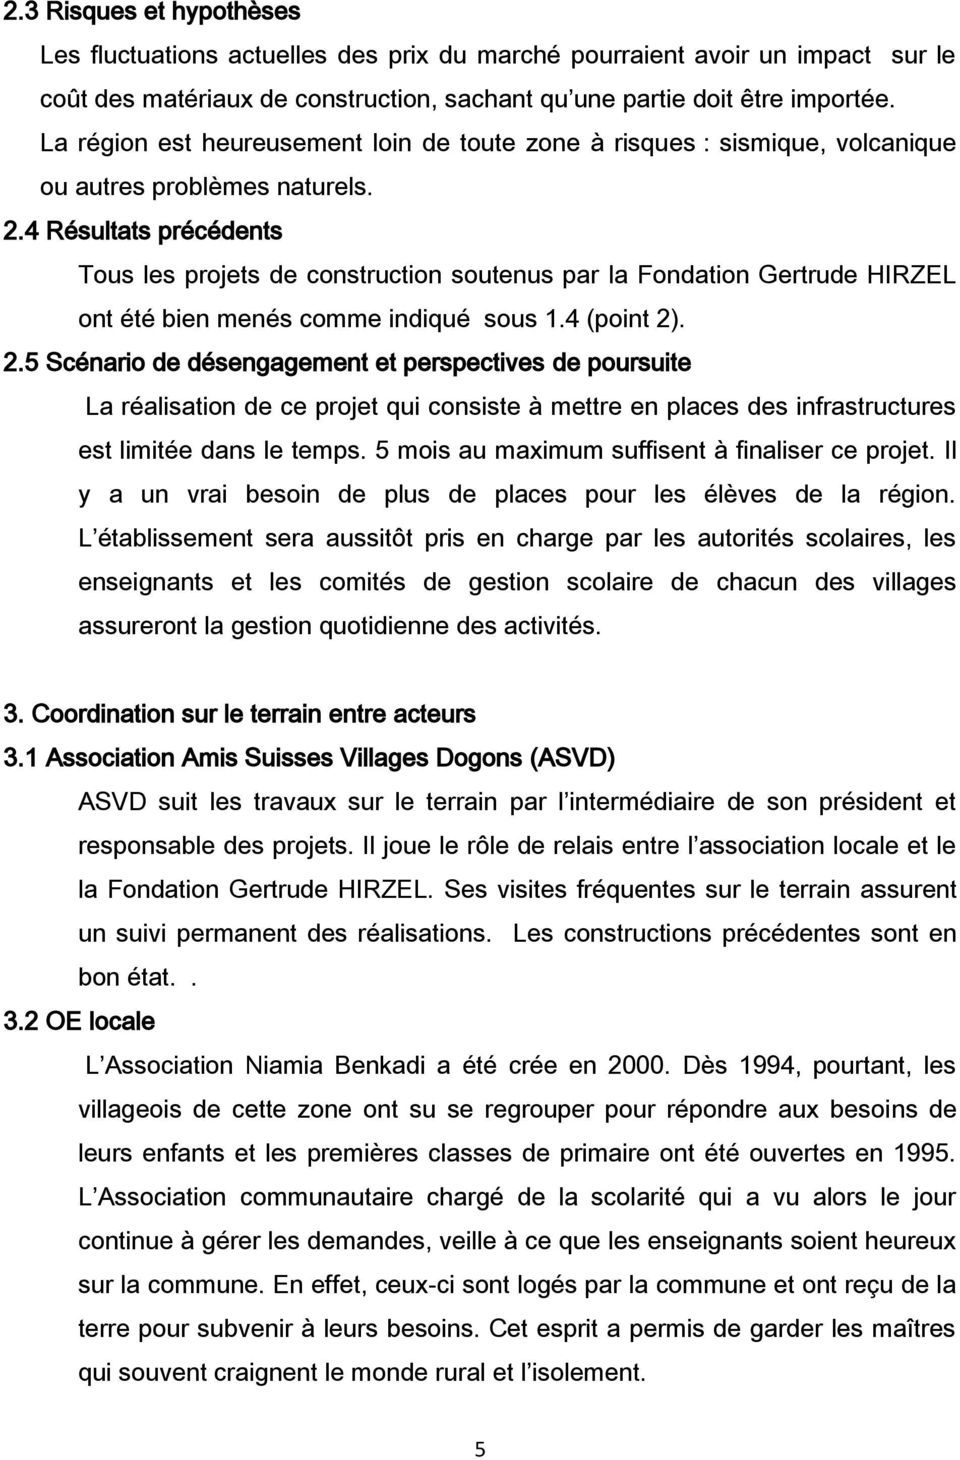 4 Résultats précédents Tous les projets de construction soutenus par la Fondation Gertrude HIRZEL ont été bien menés comme indiqué sous 1.4 (point 2)